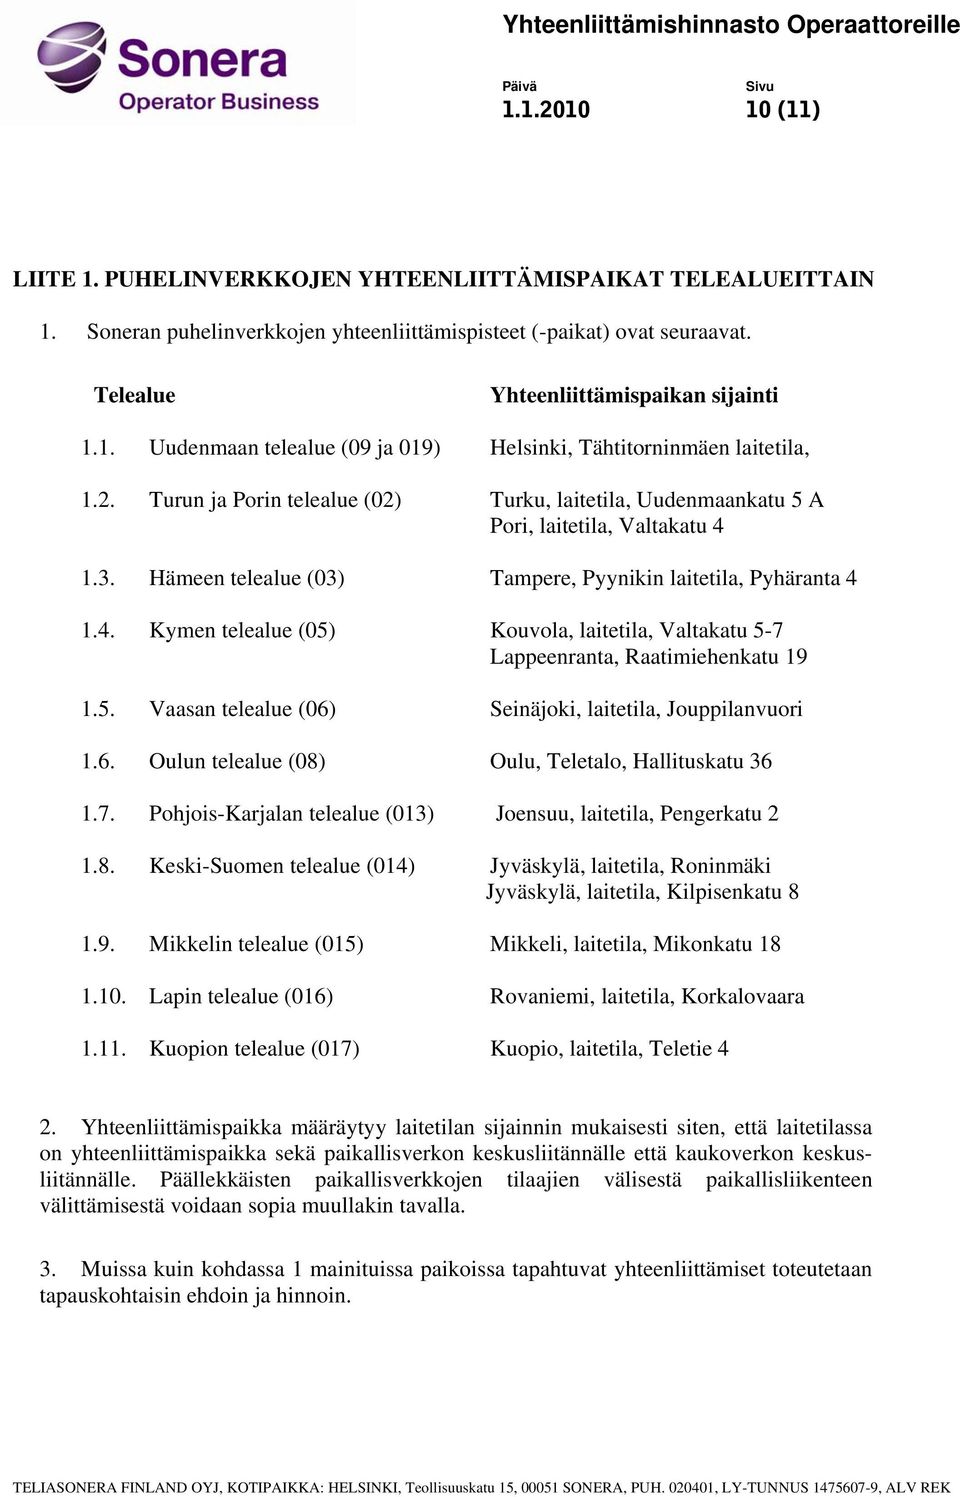 Hämeen telealue (03) Tampere, Pyynikin laitetila, Pyhäranta 4 1.4. Kymen telealue (05) Kouvola, laitetila, Valtakatu 5-7 Lappeenranta, Raatimiehenkatu 19 1.5. Vaasan telealue (06) Seinäjoki, laitetila, Jouppilanvuori 1.